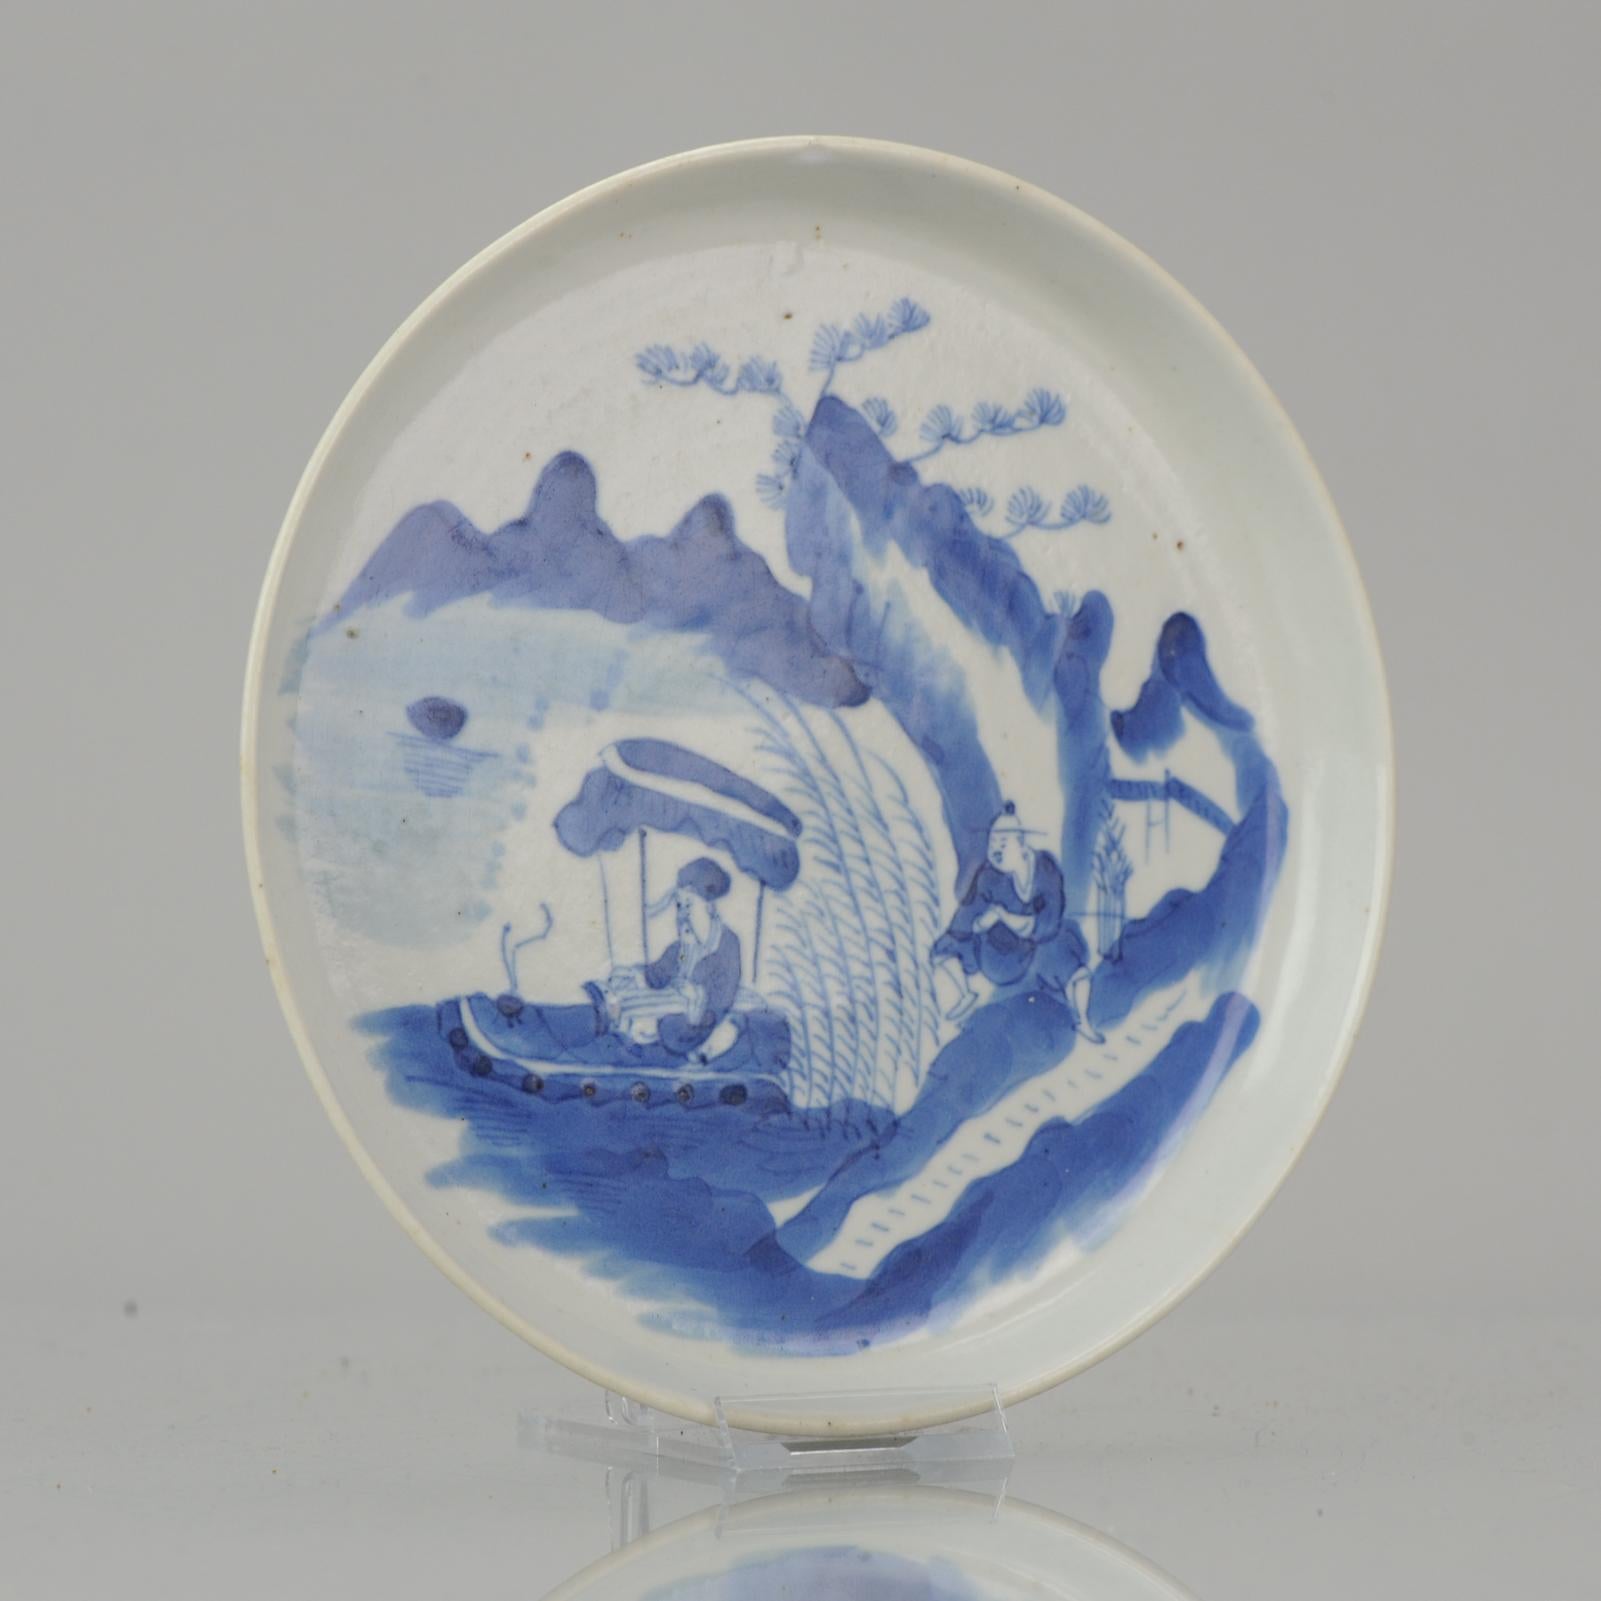 Beschreibung
Eine hochwertige Schale aus Porzellan Bleu de Hue. Der Innenraum ist mit einer Szene aus 